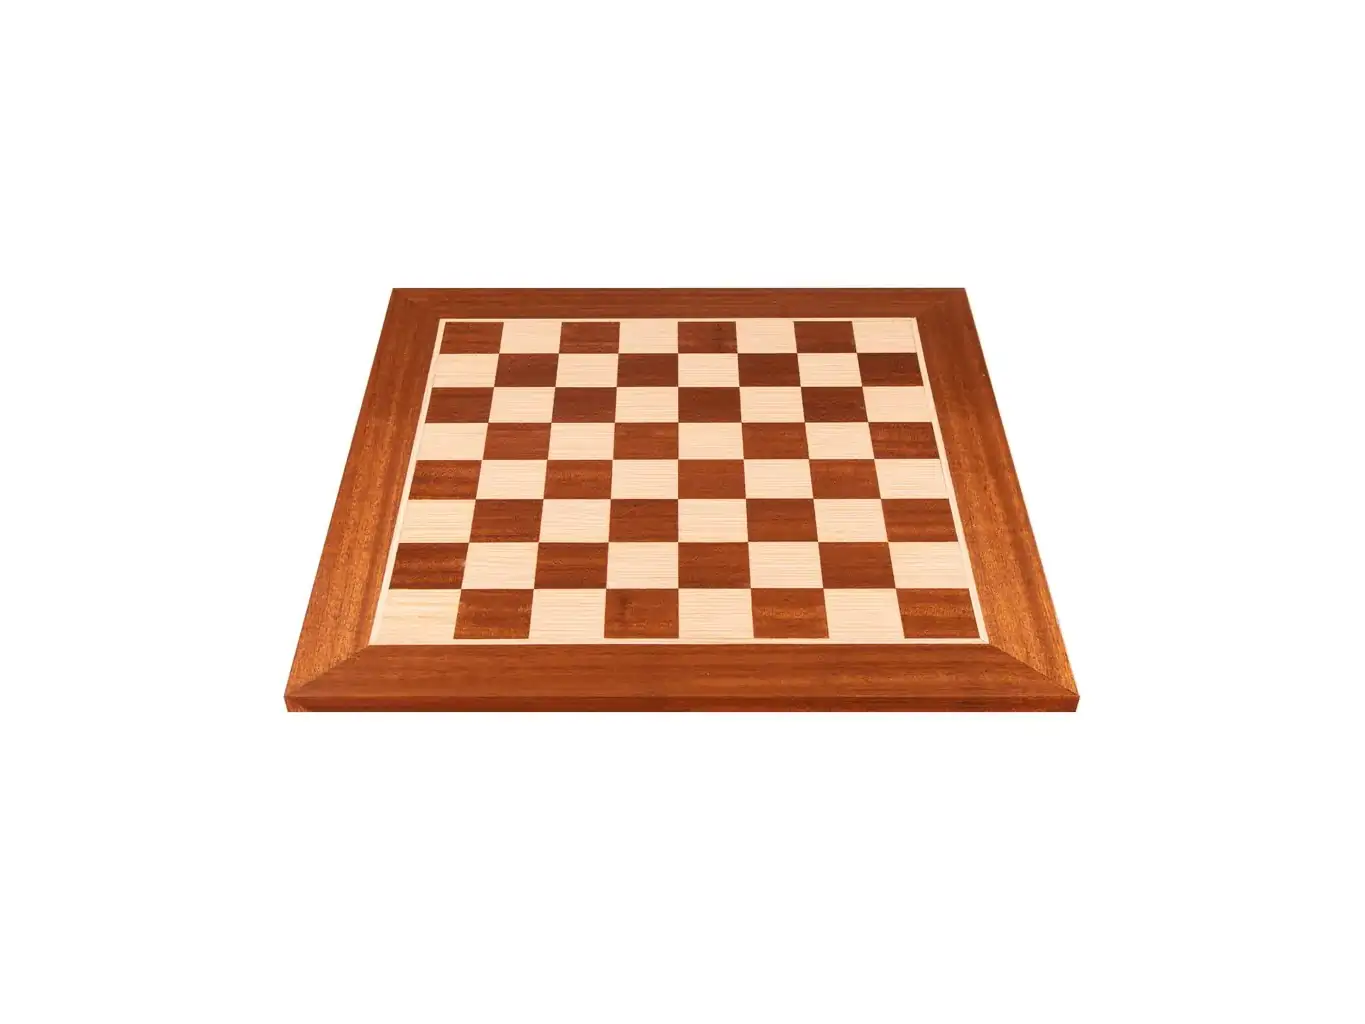 Ξύλινη σκακιέρα μαόνι και δρυς 40x40 | Ξύλινη χειροποίητη σκακιέρα